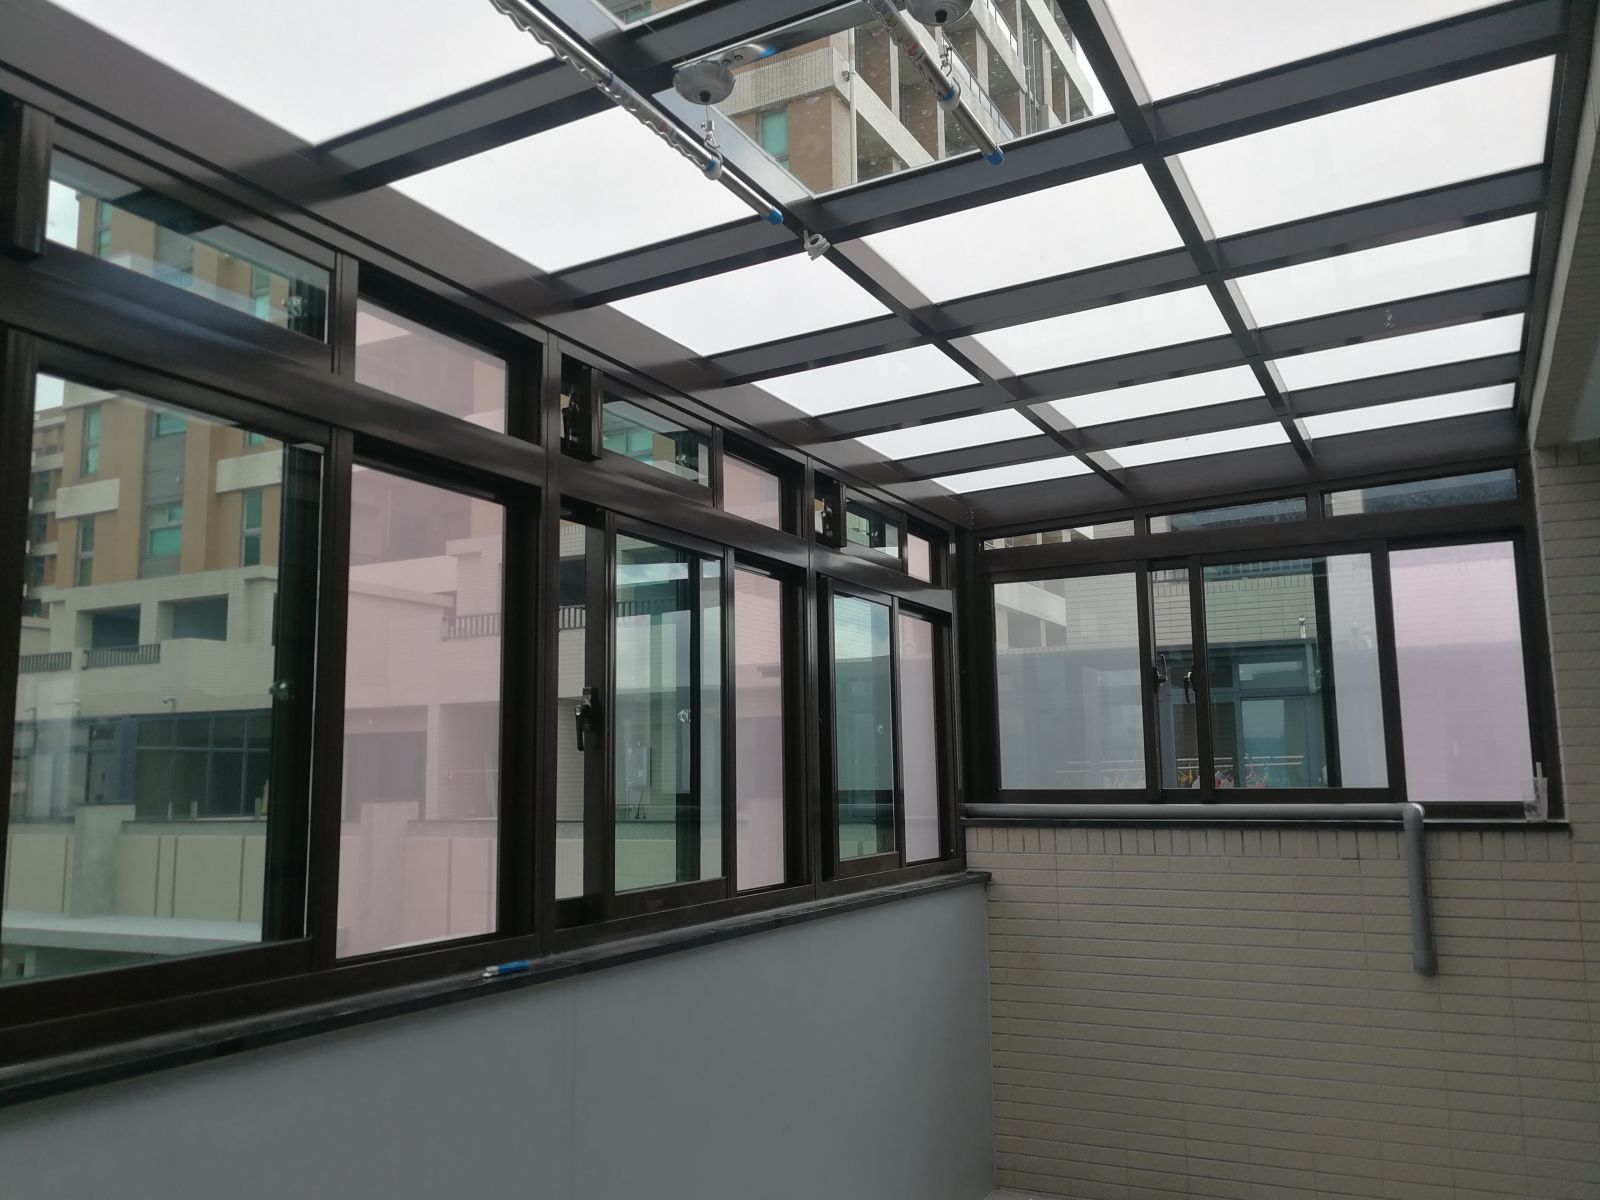 右側採用高級氣密窗5mm綠色強化玻璃(景觀式三拉窗)將陽台內左右兩側透氣管網外接出